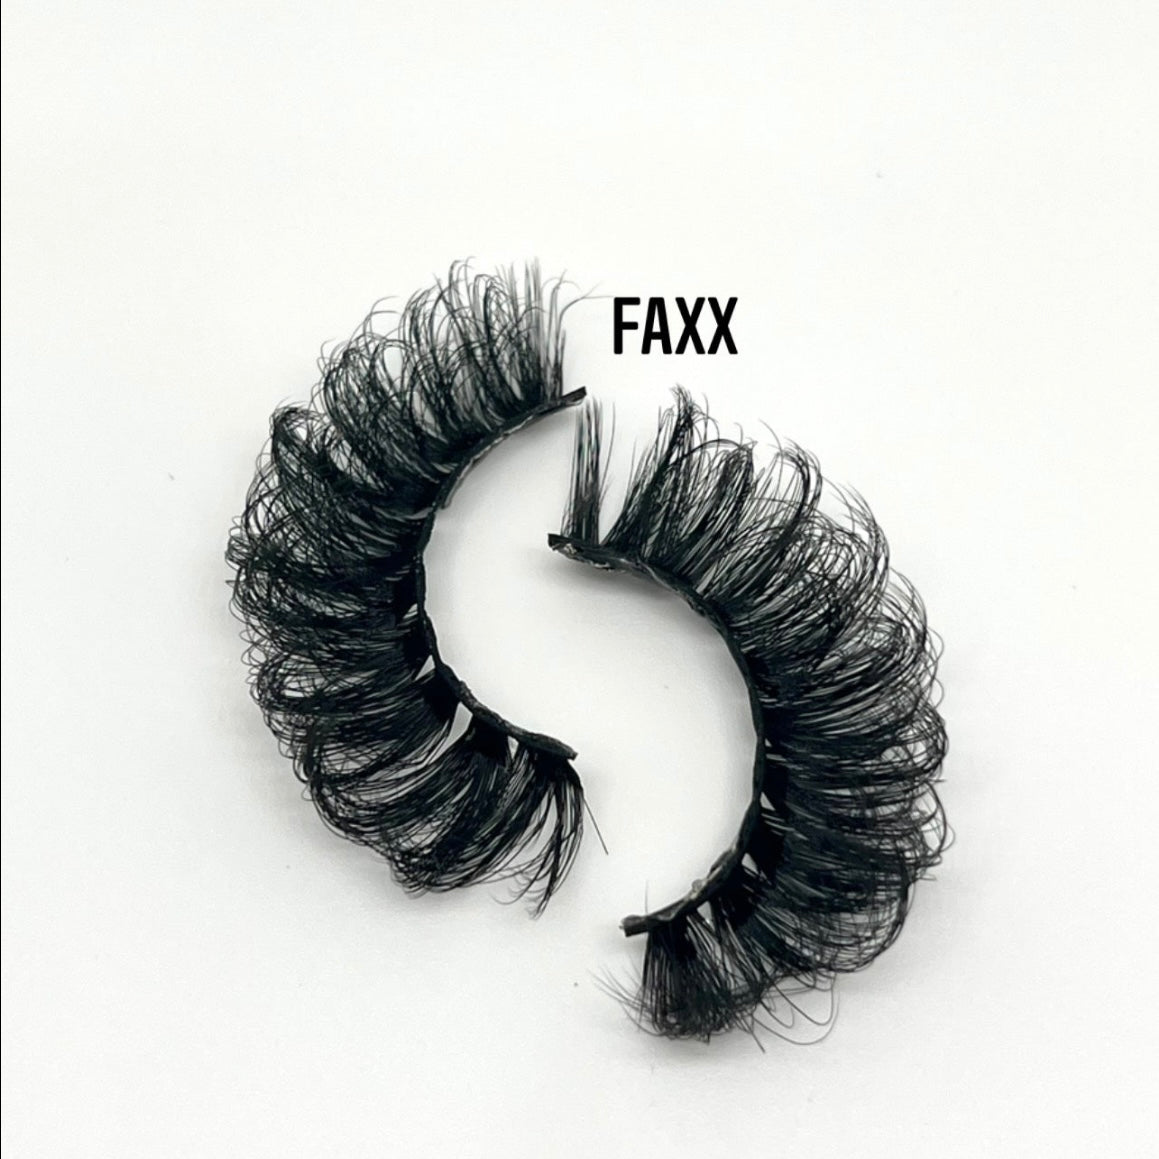 Faxx Lashes